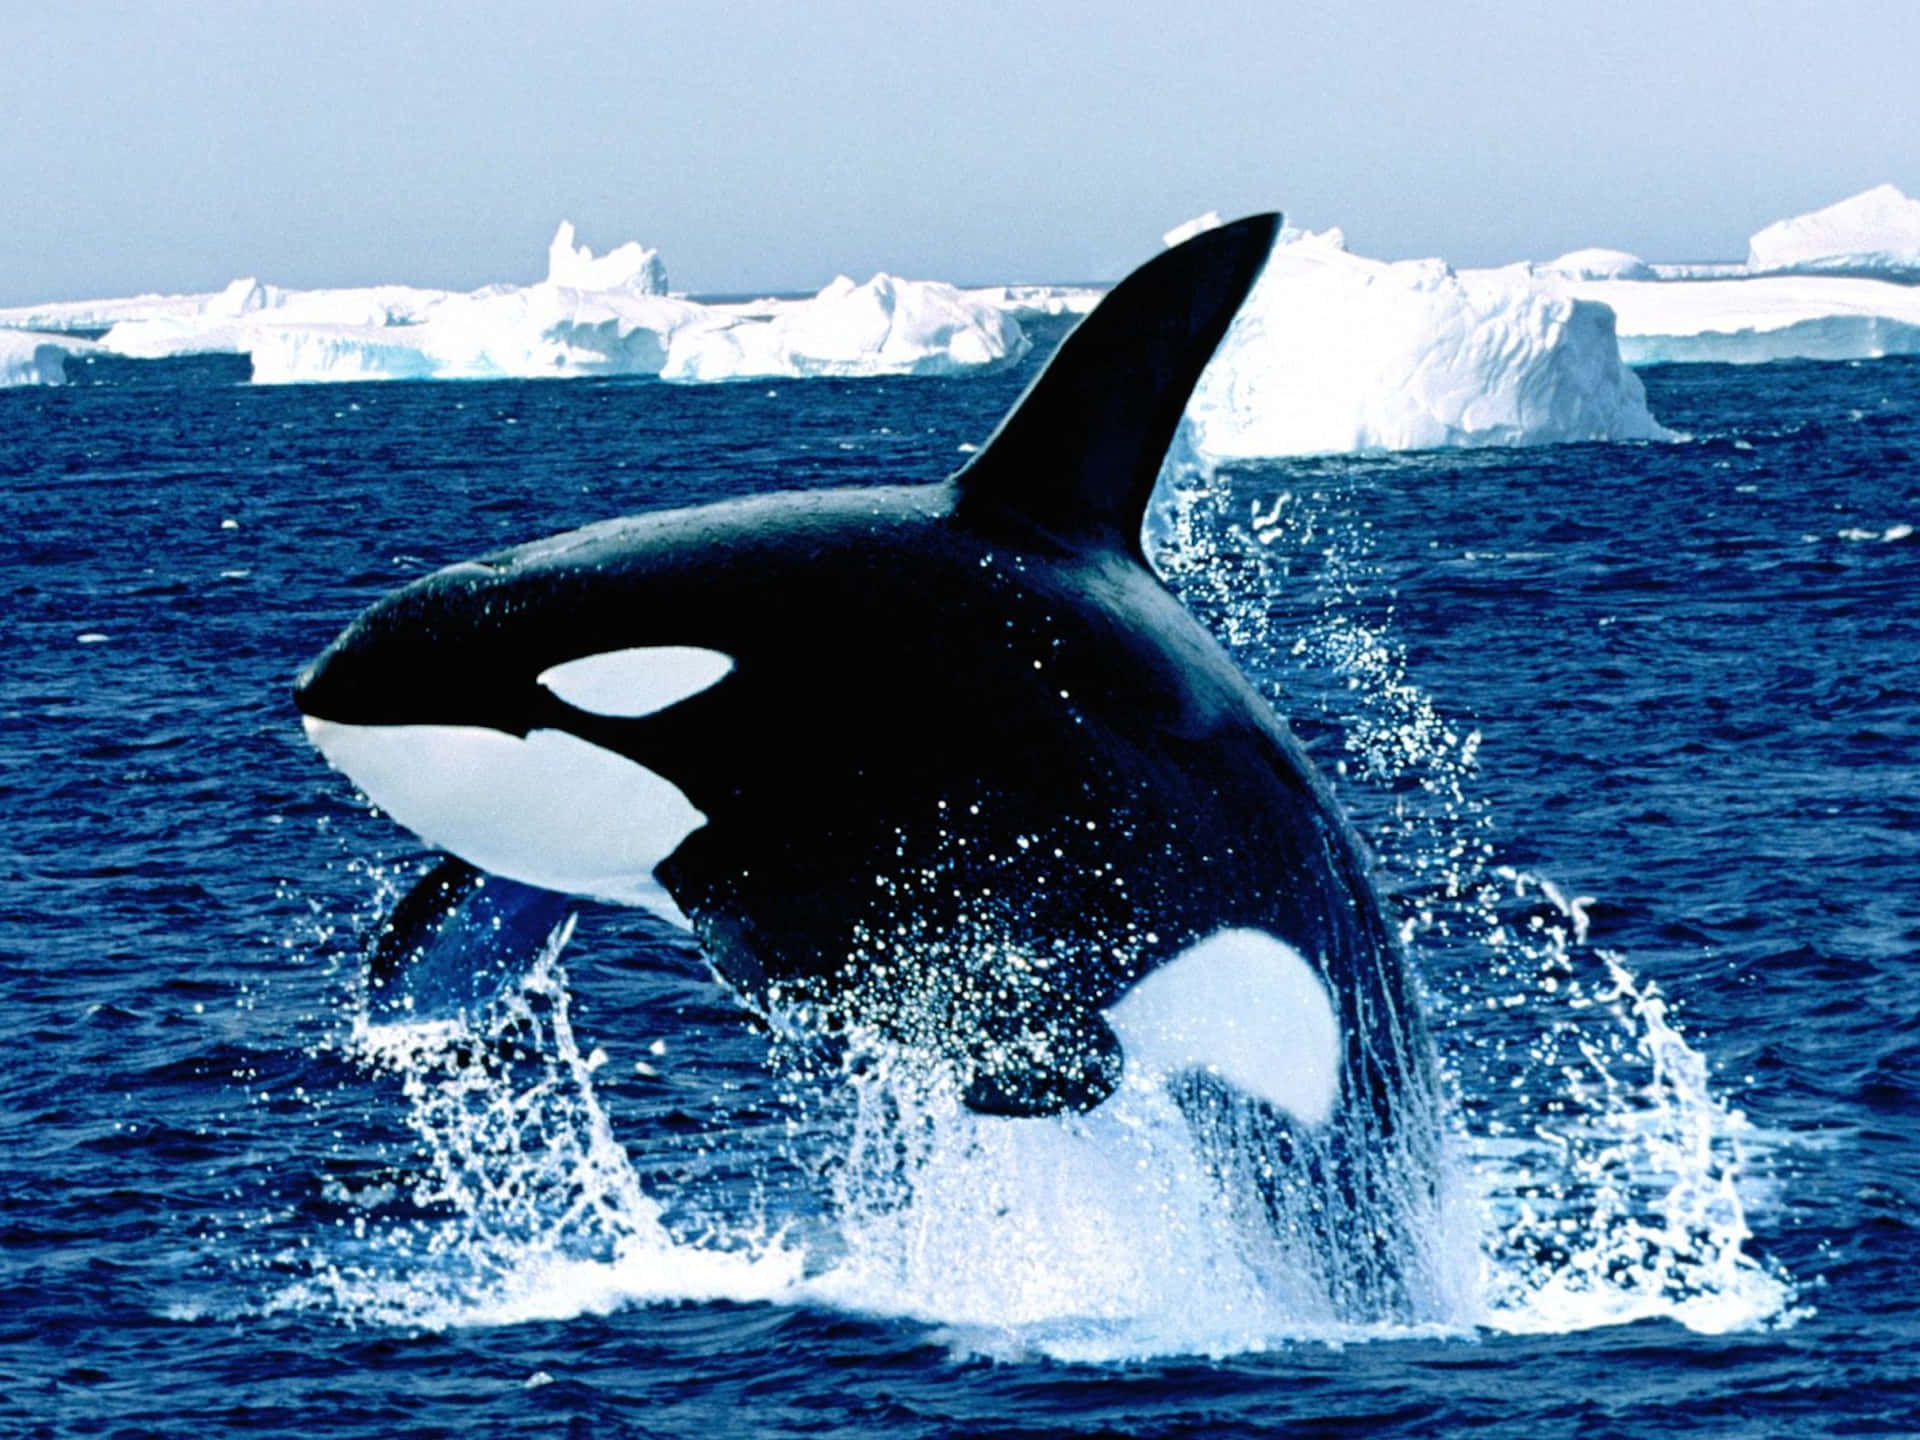 seaworld killer whale wallpaper